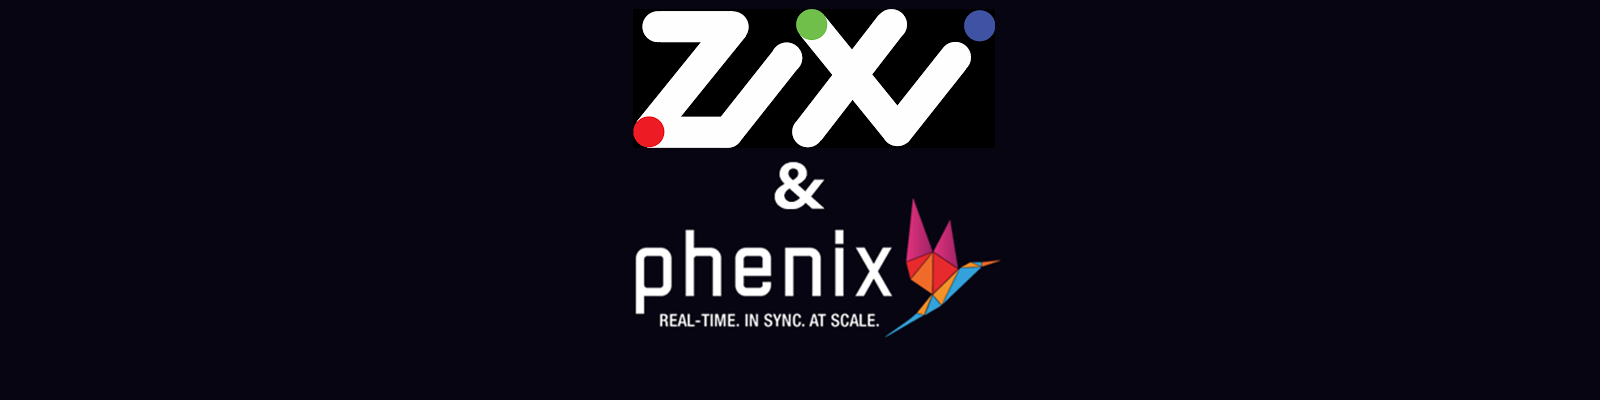 Zixi Partners with Phenix